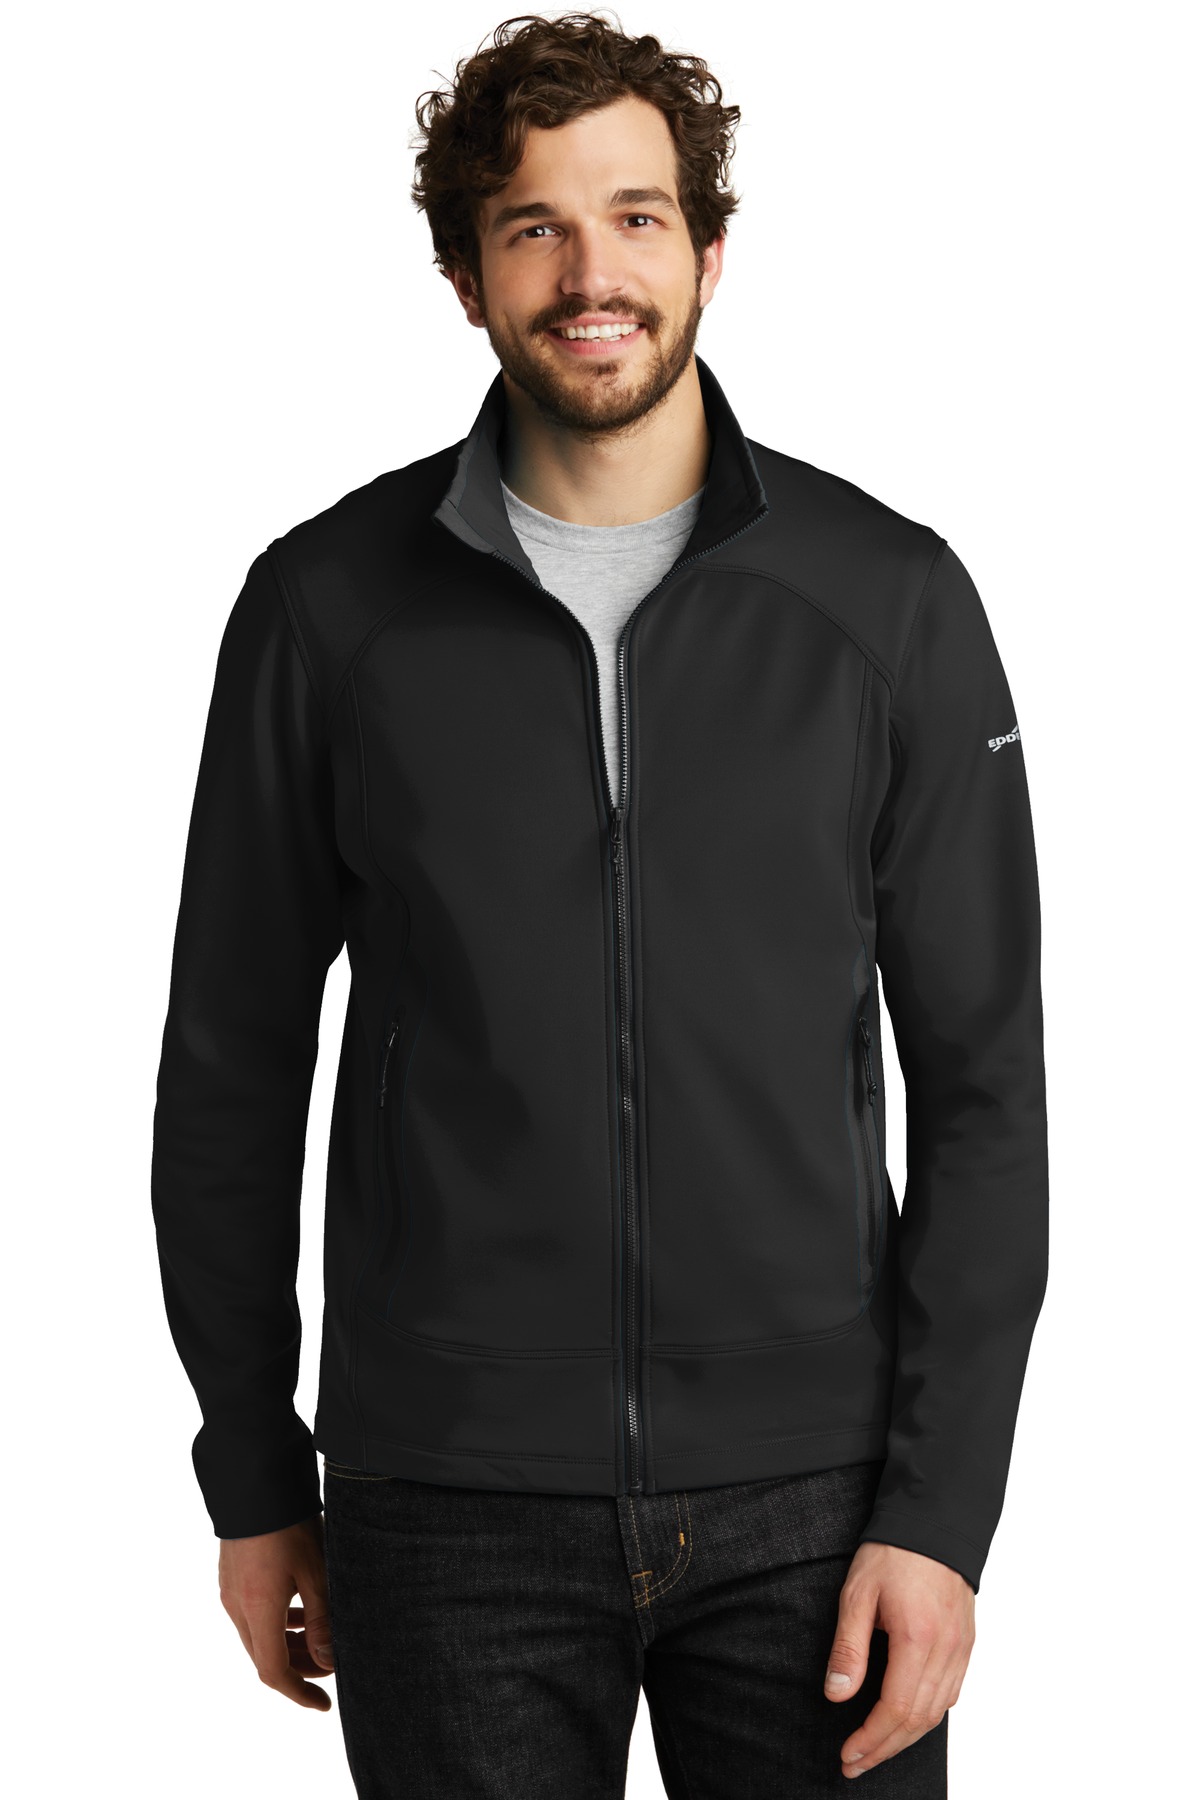 Eddie Bauer Corporate Hospitality Activewear,Outerwear Sweatshirts&Fleece ® Highpoint Fleece Jacket.-Eddie Bauer